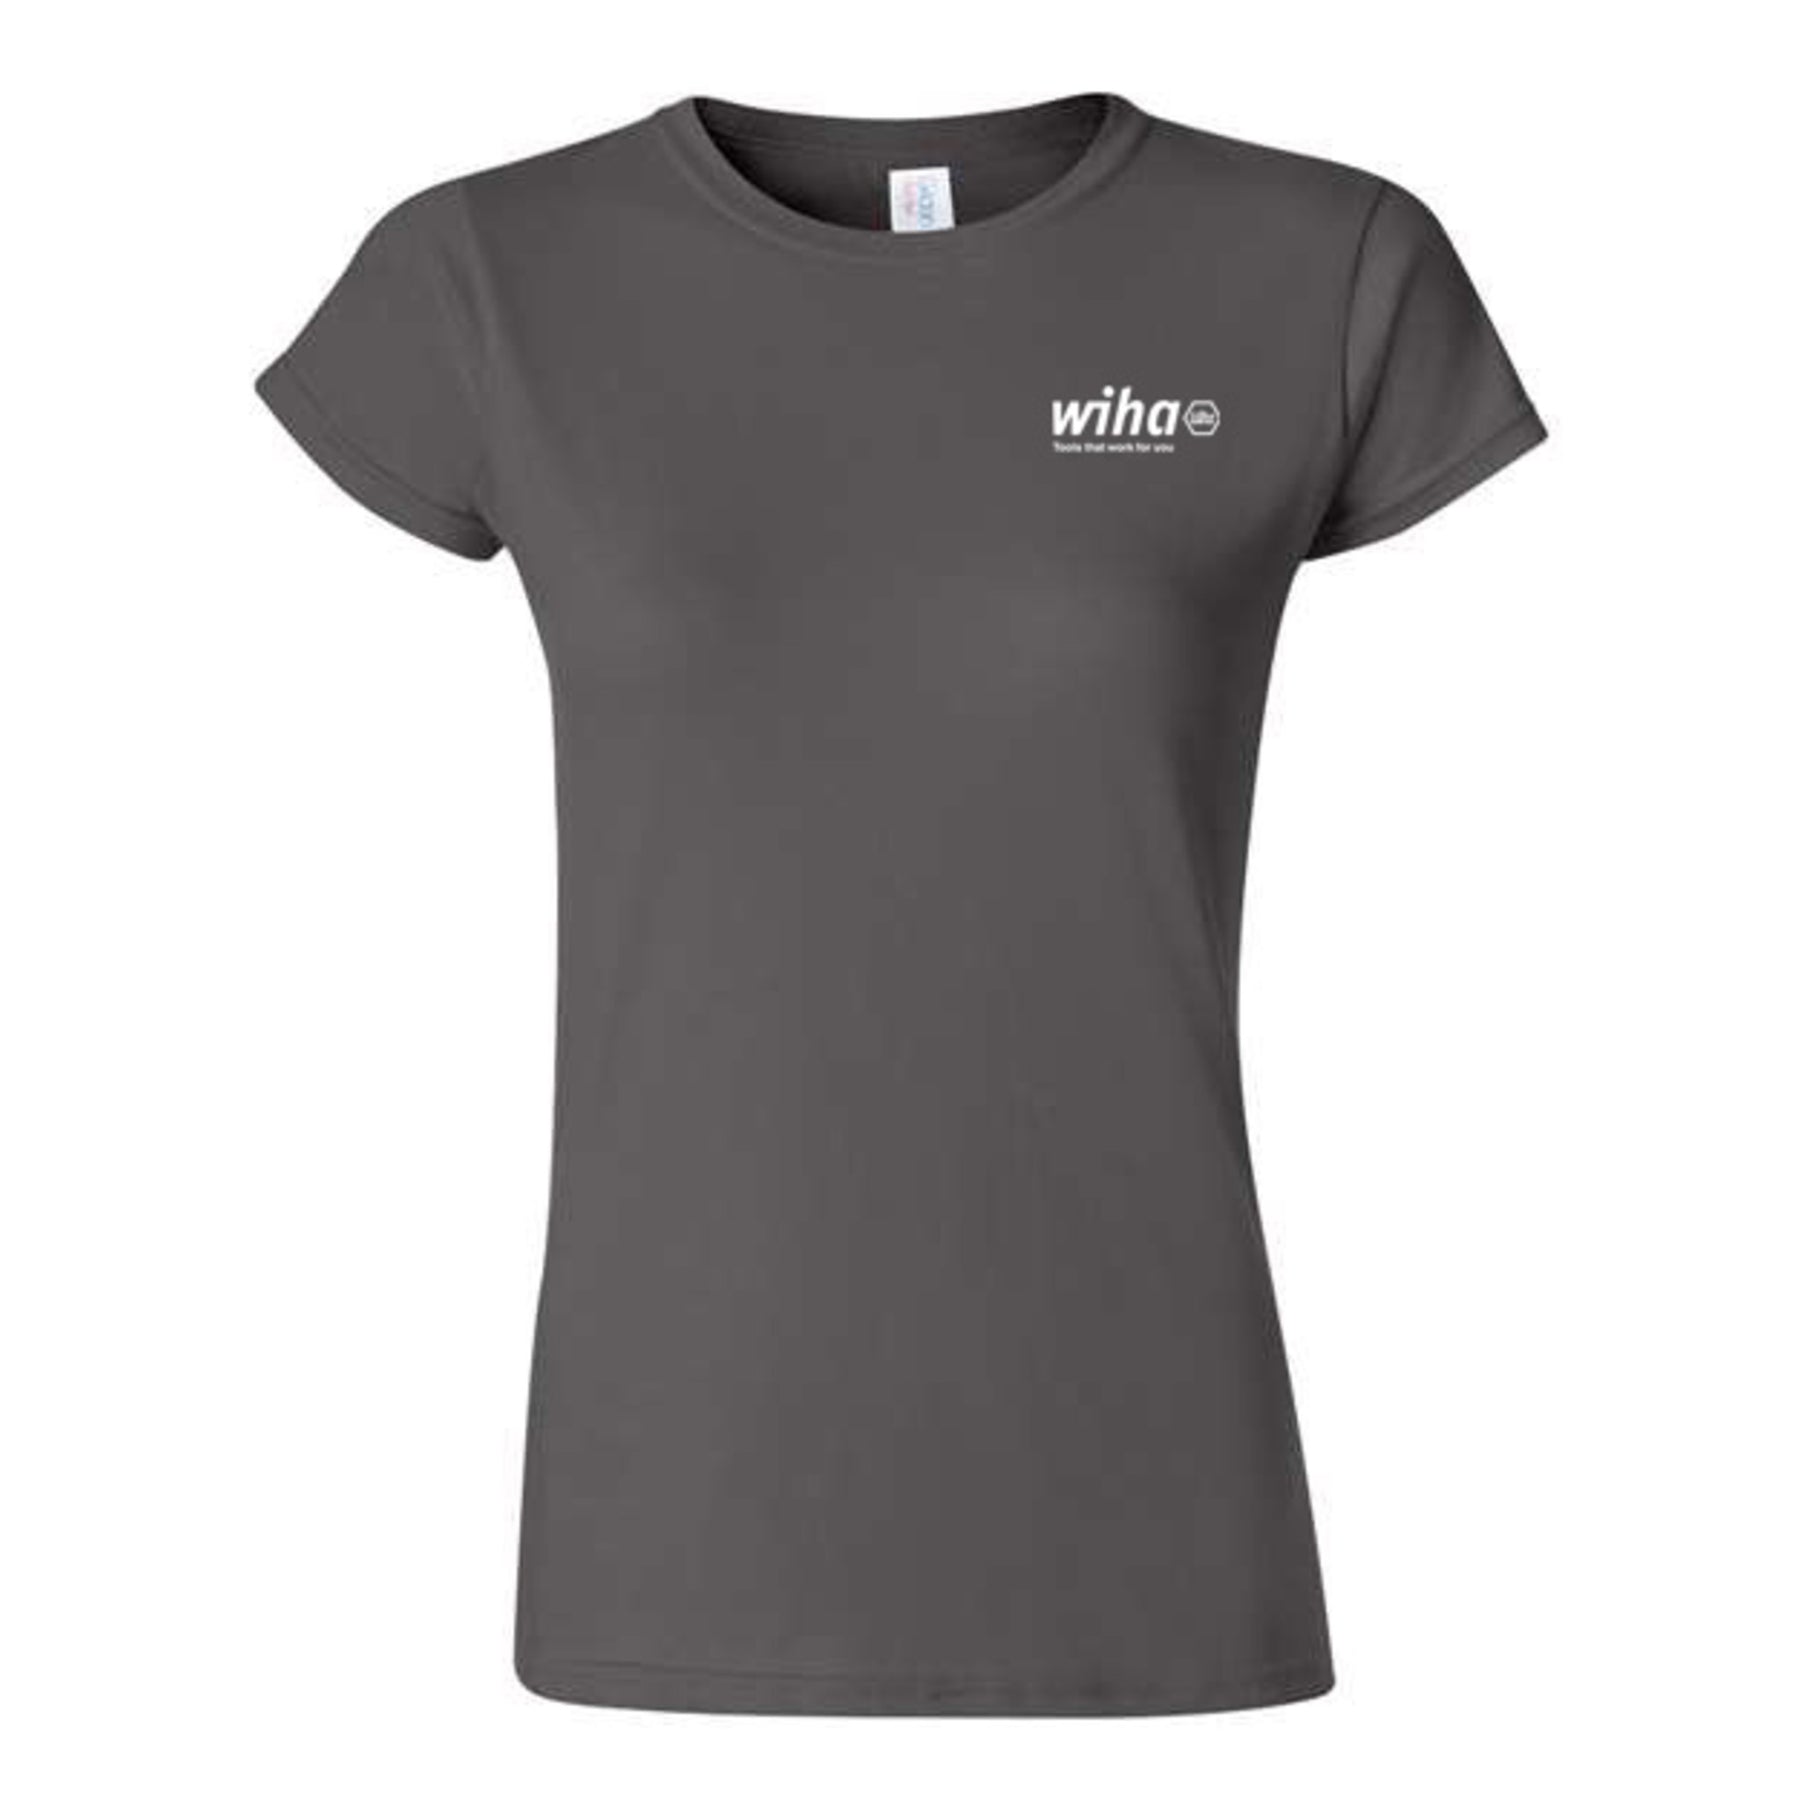 Wiha 91611 Wiha Women's T-shirt Charcoal Grey XXL